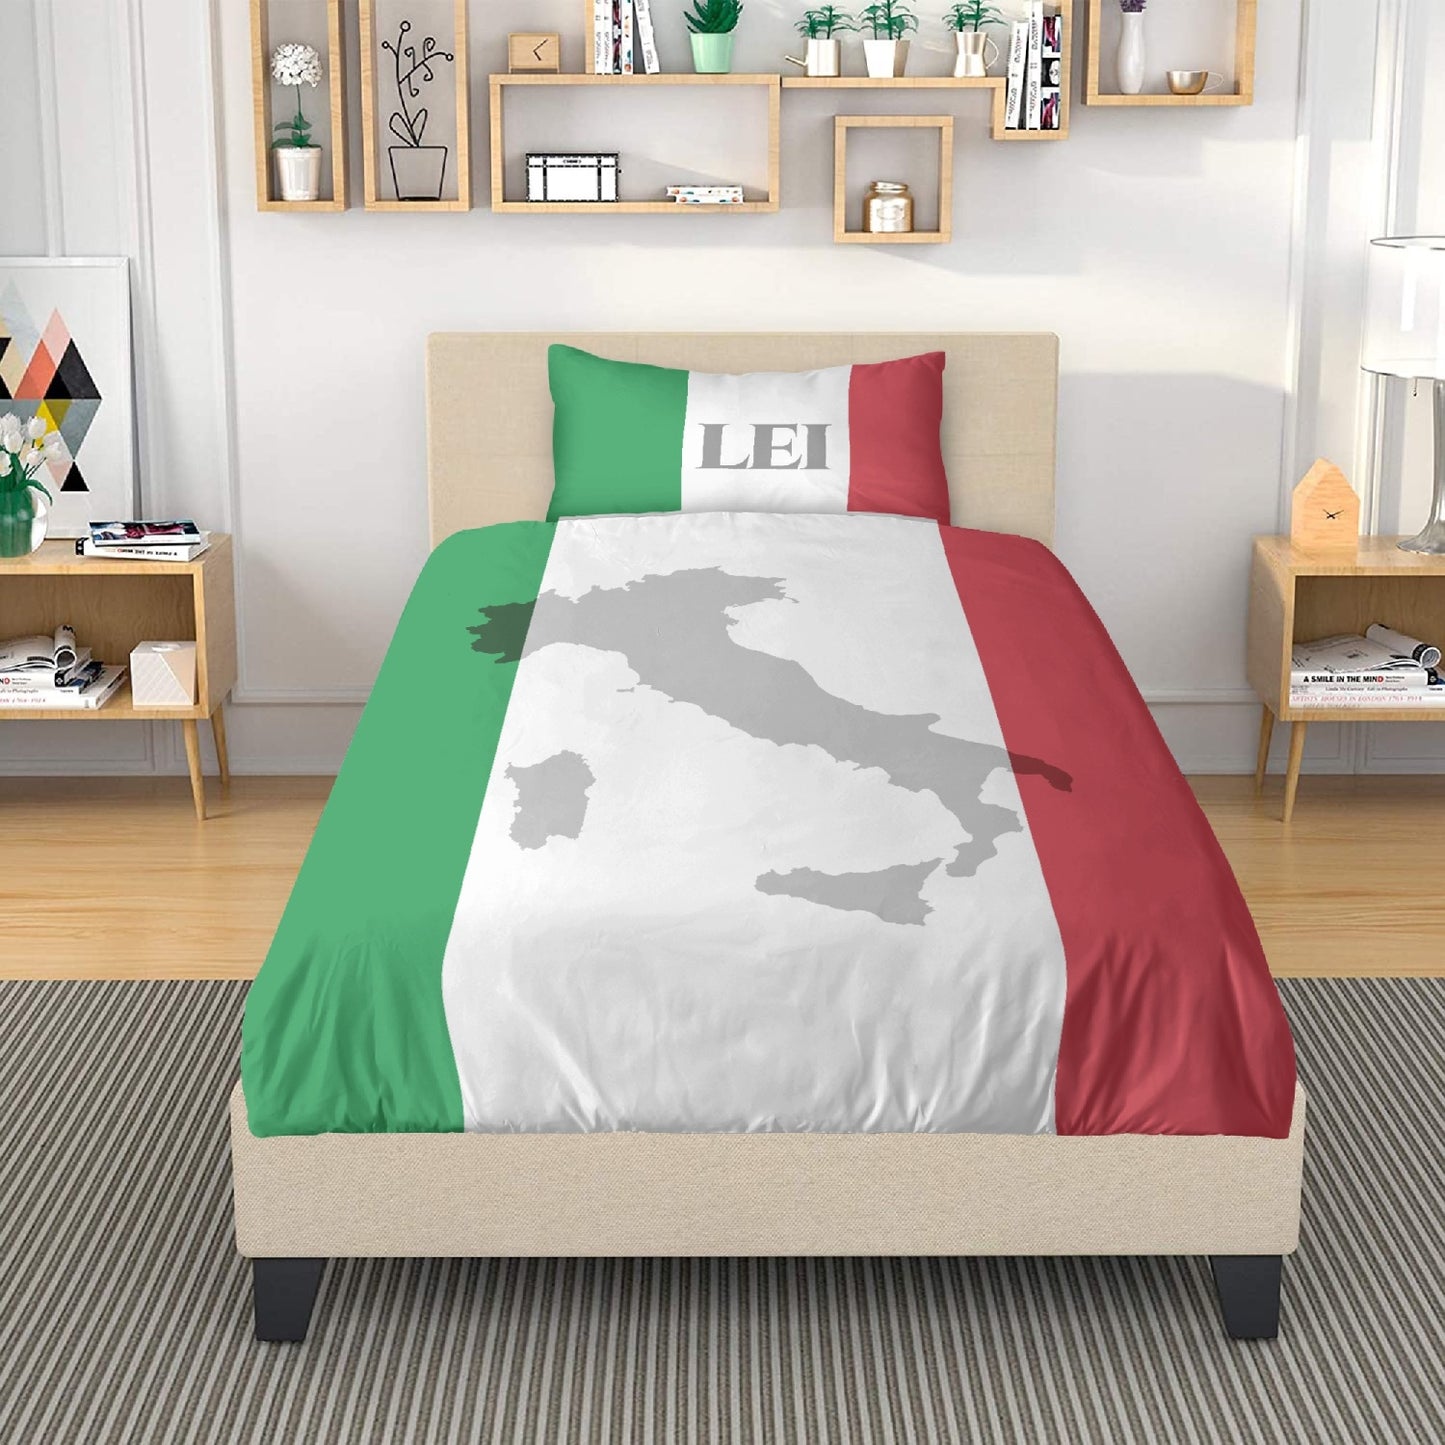 Bedding Set - Lei Lui Italy flag